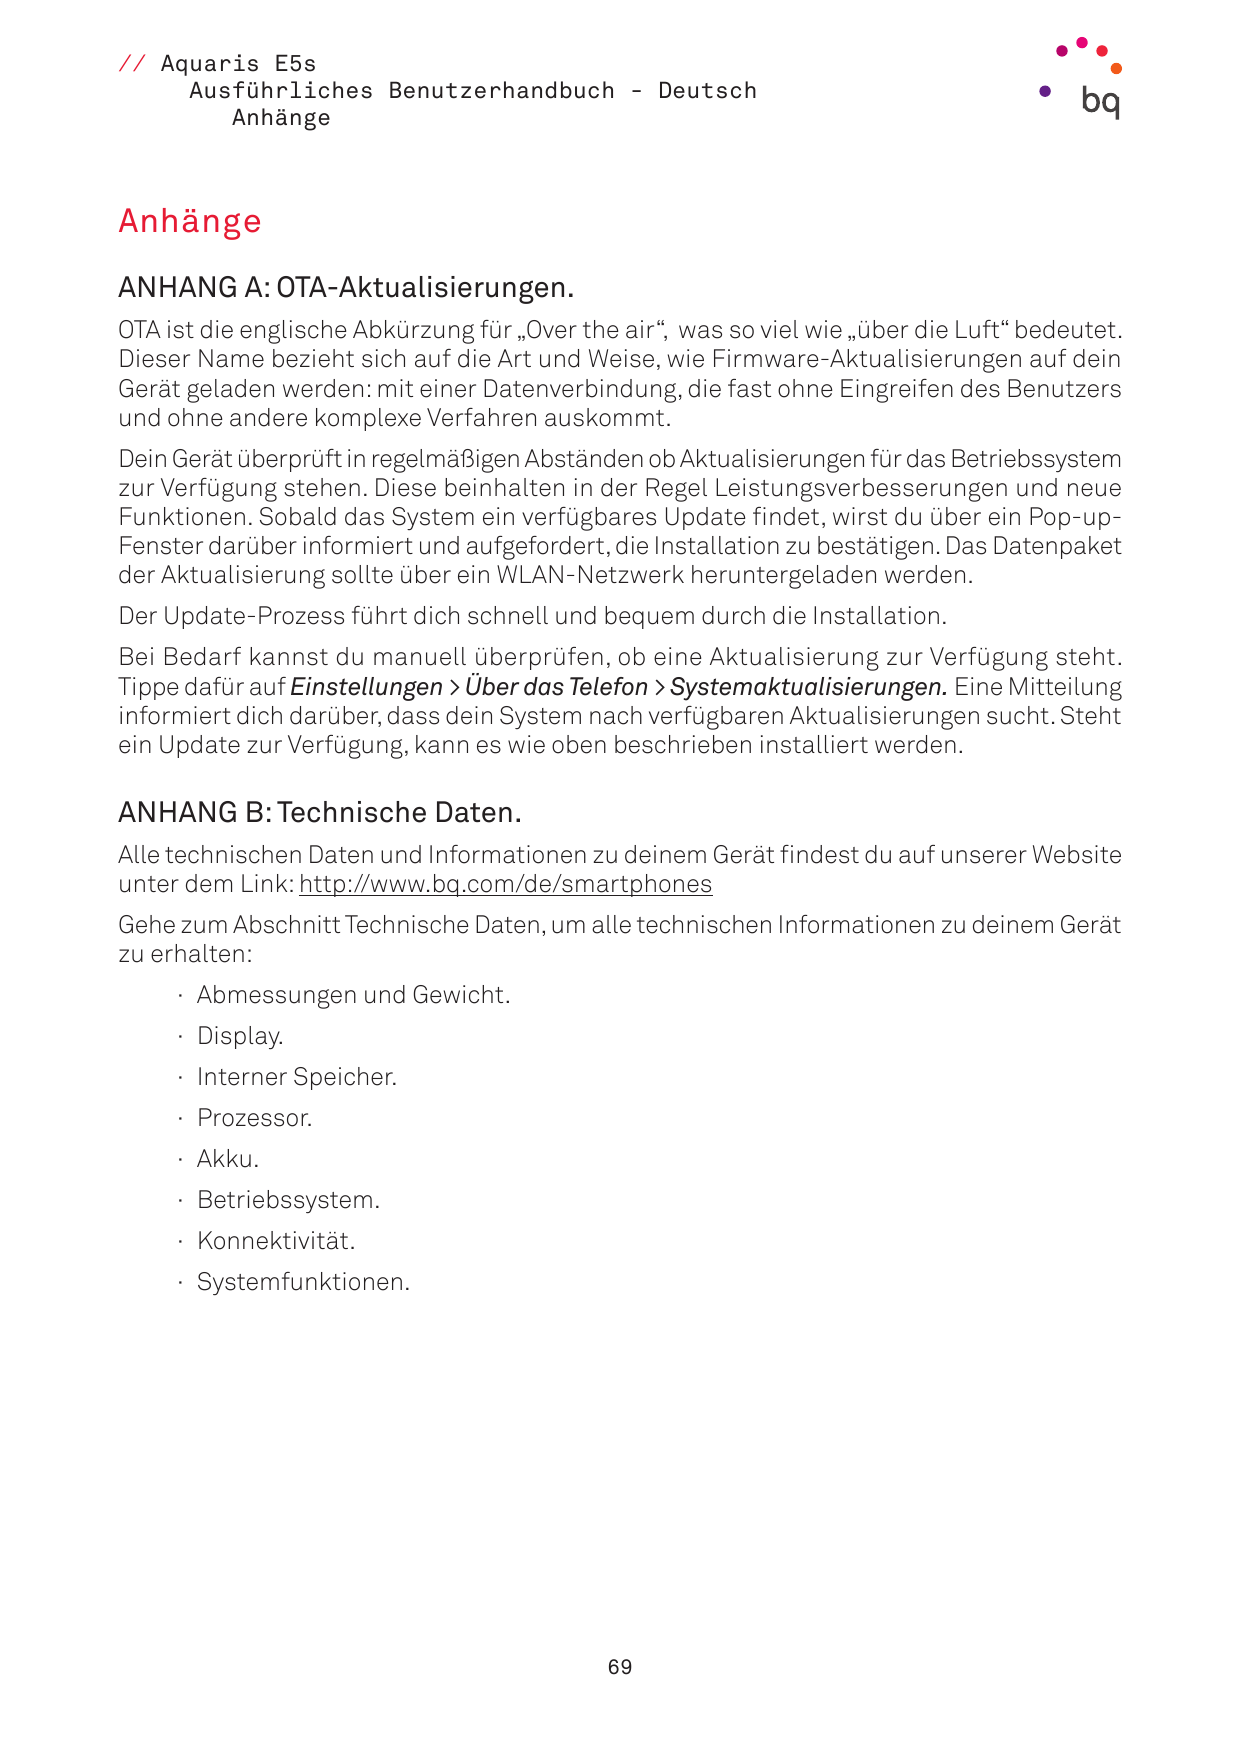 // Aquaris E5sAusführliches Benutzerhandbuch - DeutschAnhängeAnhängeANHANG A: OTA-Aktualisierungen.OTA ist die englische Abkürzu